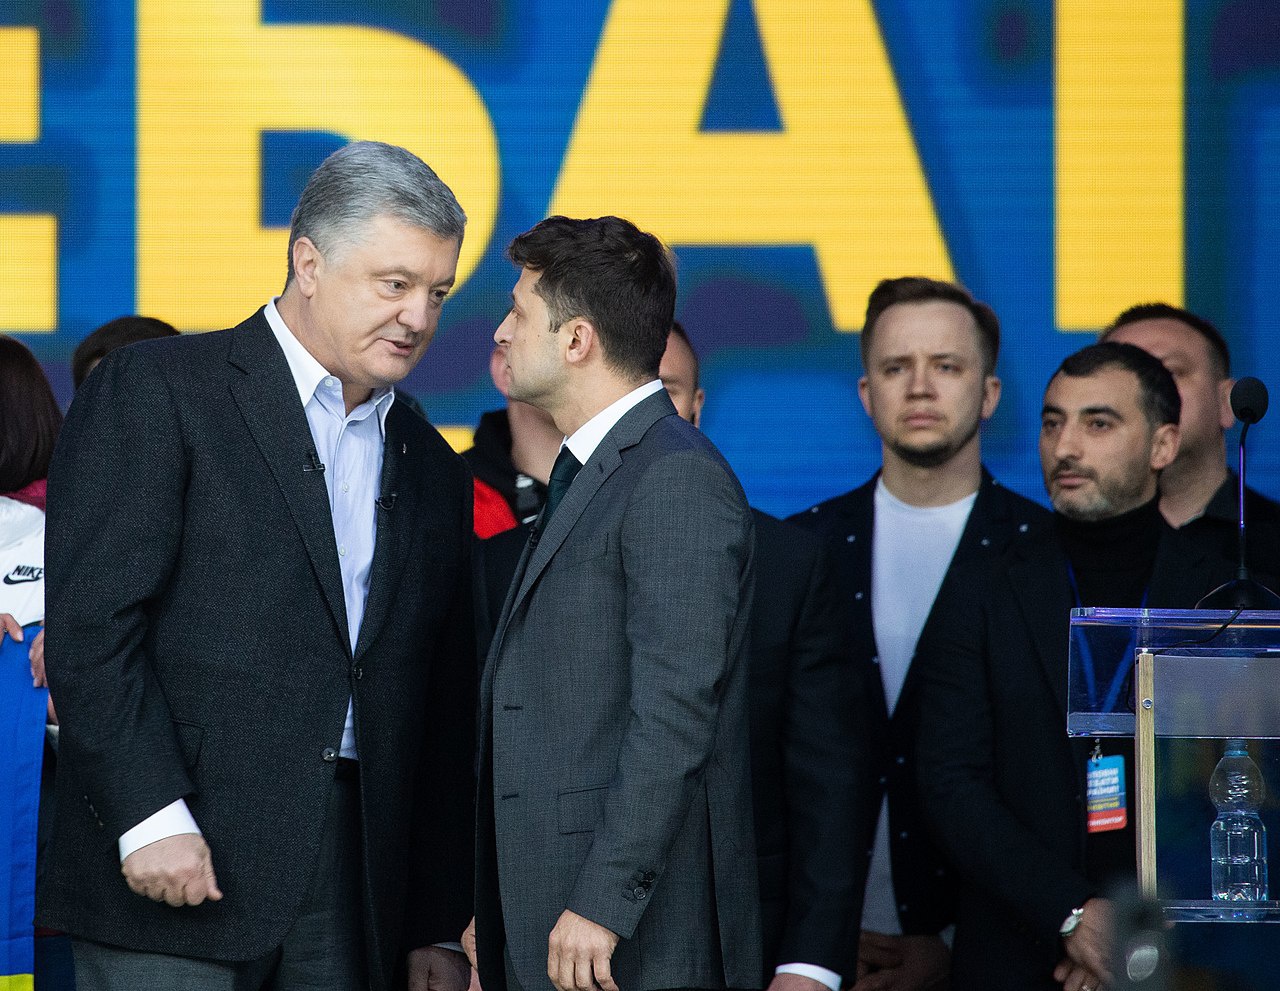 Порошенко на равных конкурирует за президентское кресло с глупым клоуном, выглядывающим из бокового кармана пиджака Игоря Валерьевича.